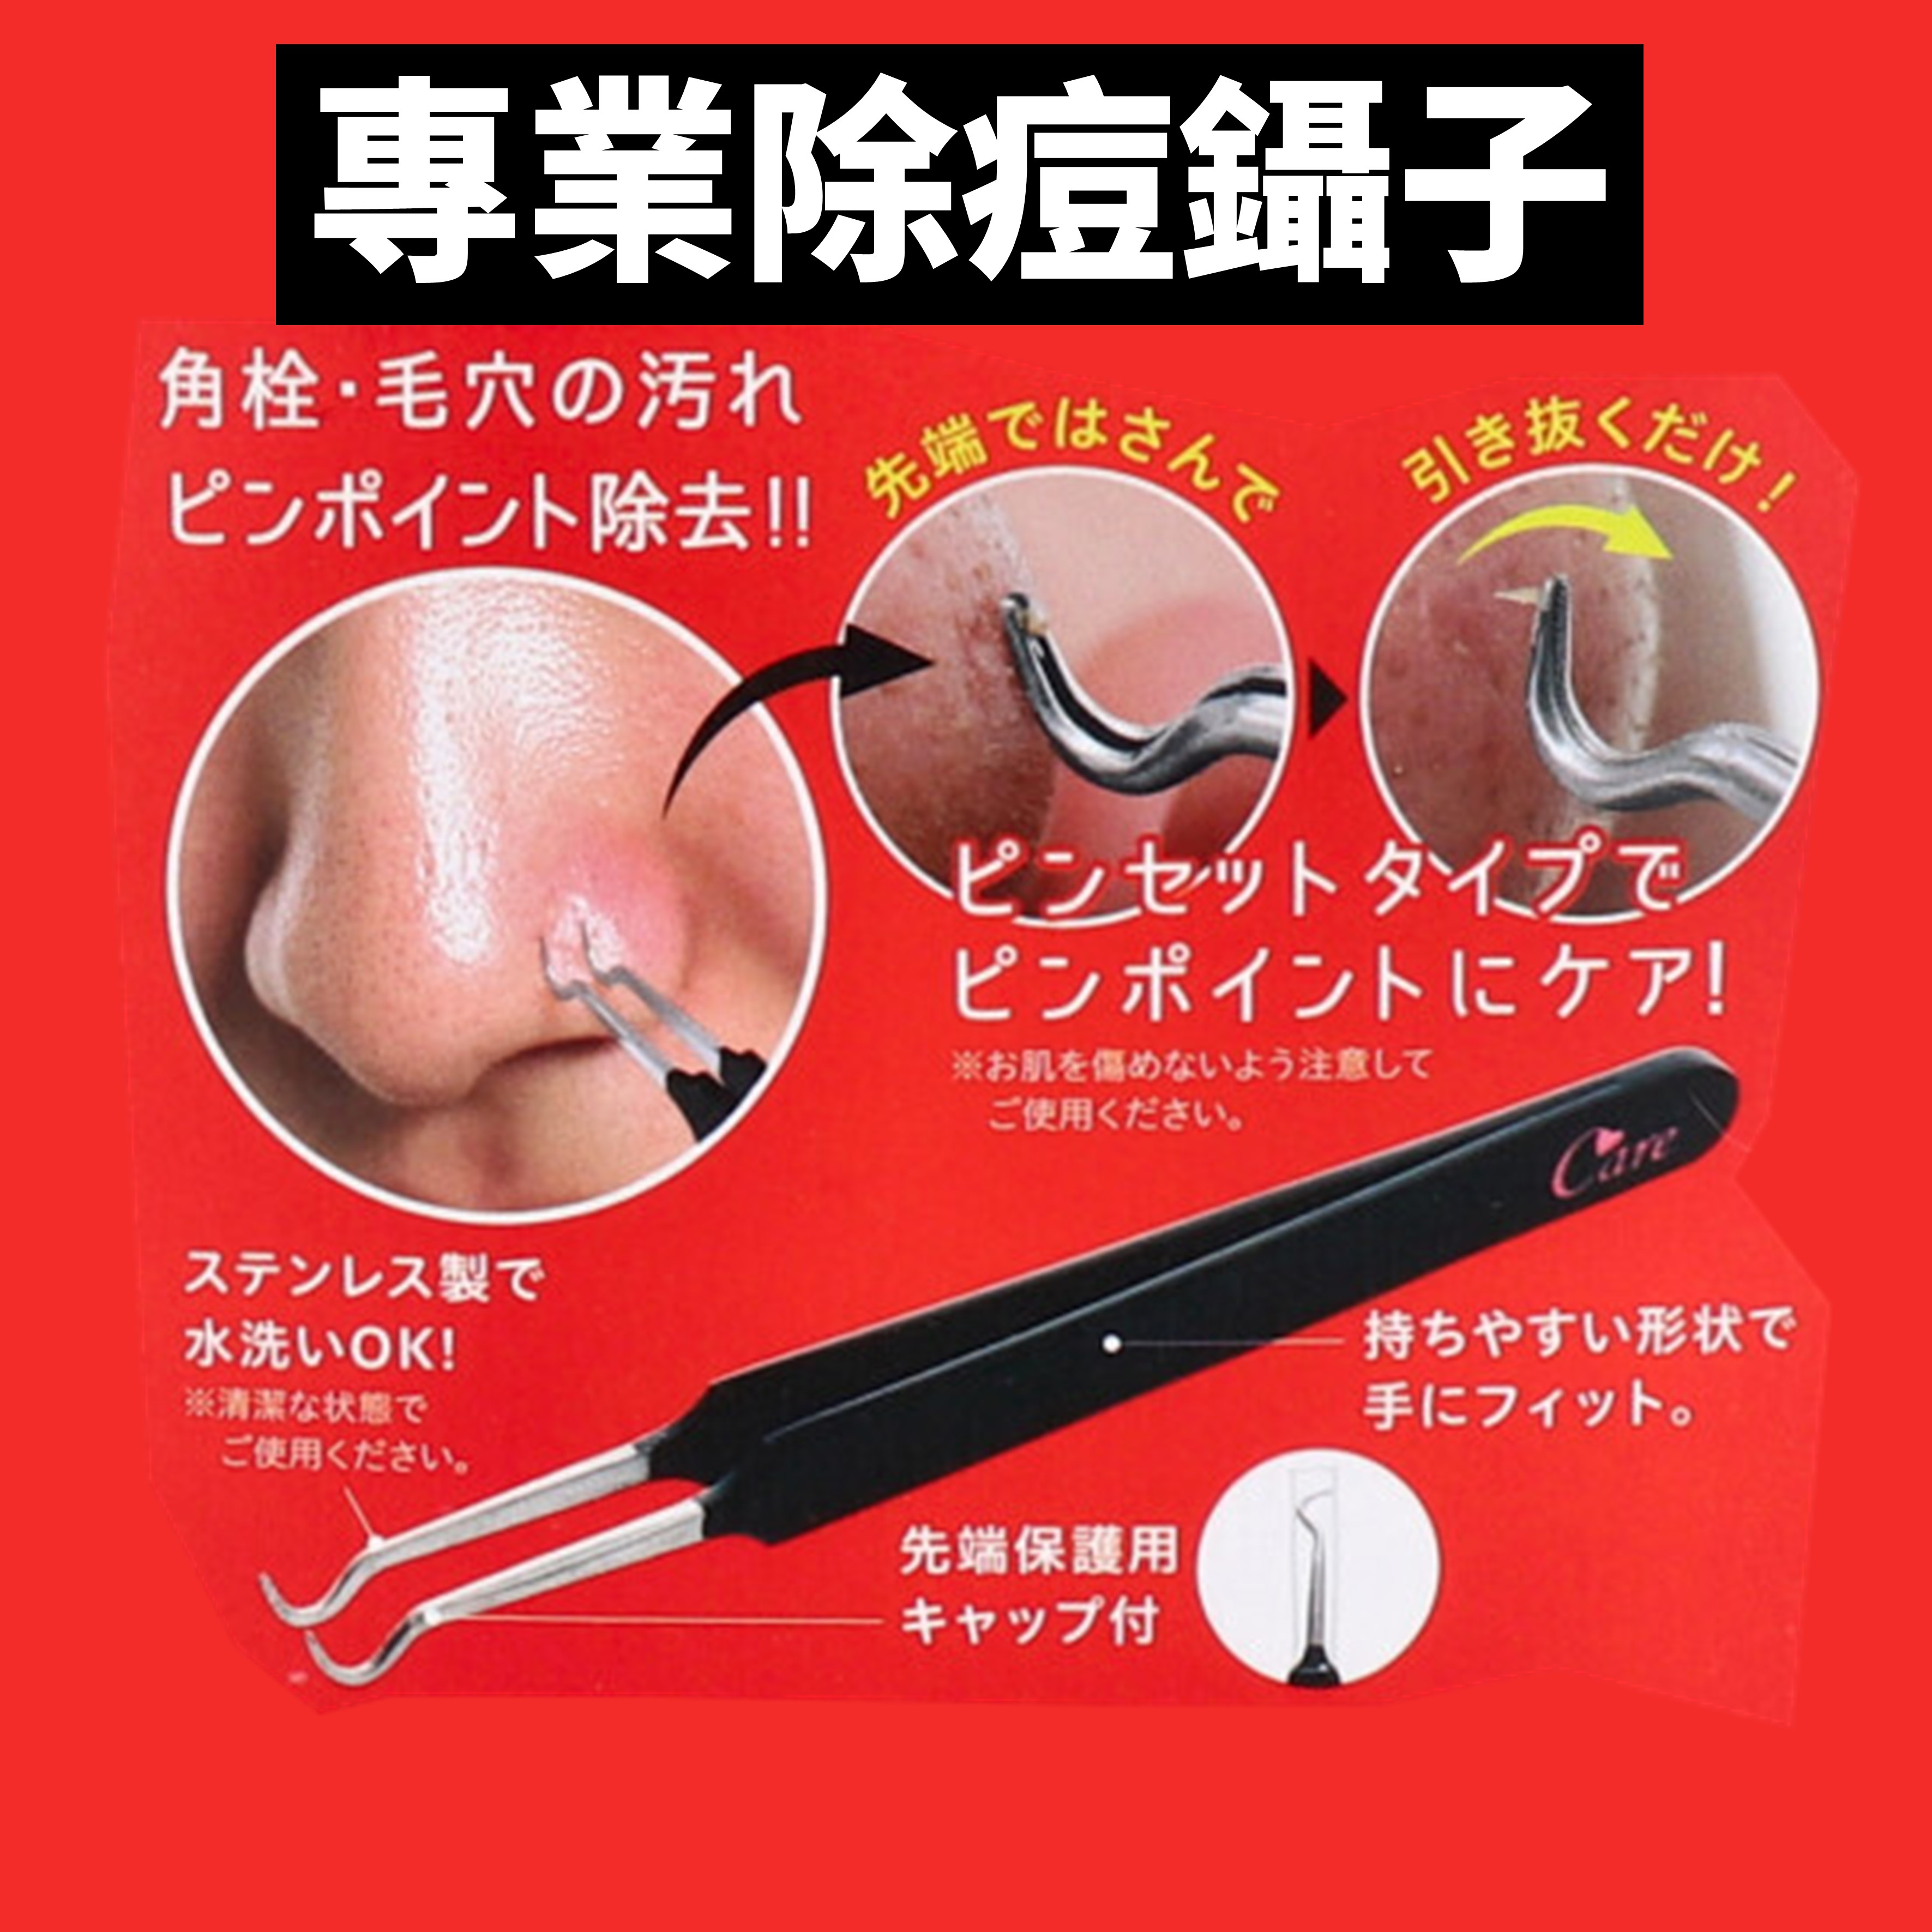 日本 專業除痘鑷子 去痘夾 擠痘神器 美容工具 臉部清潔